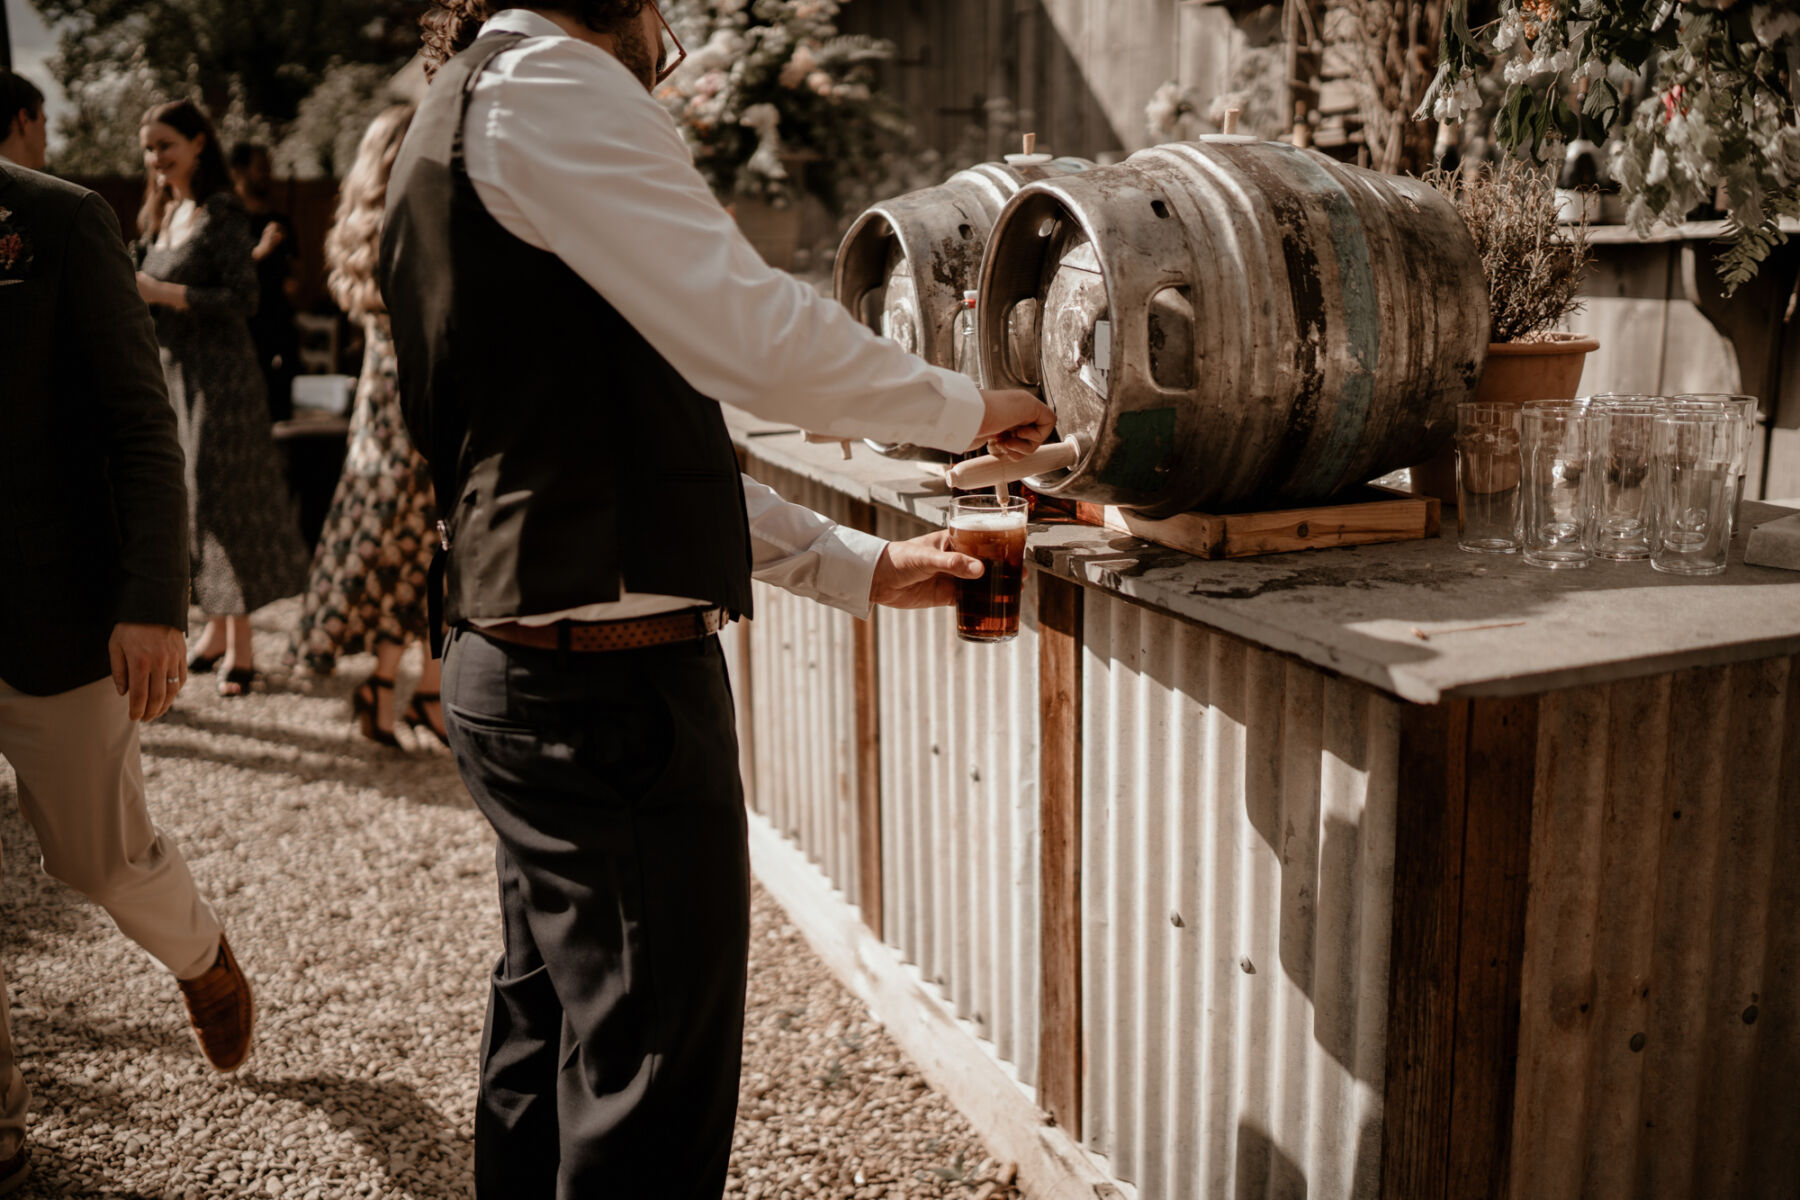 Barrels of booze at a wedding